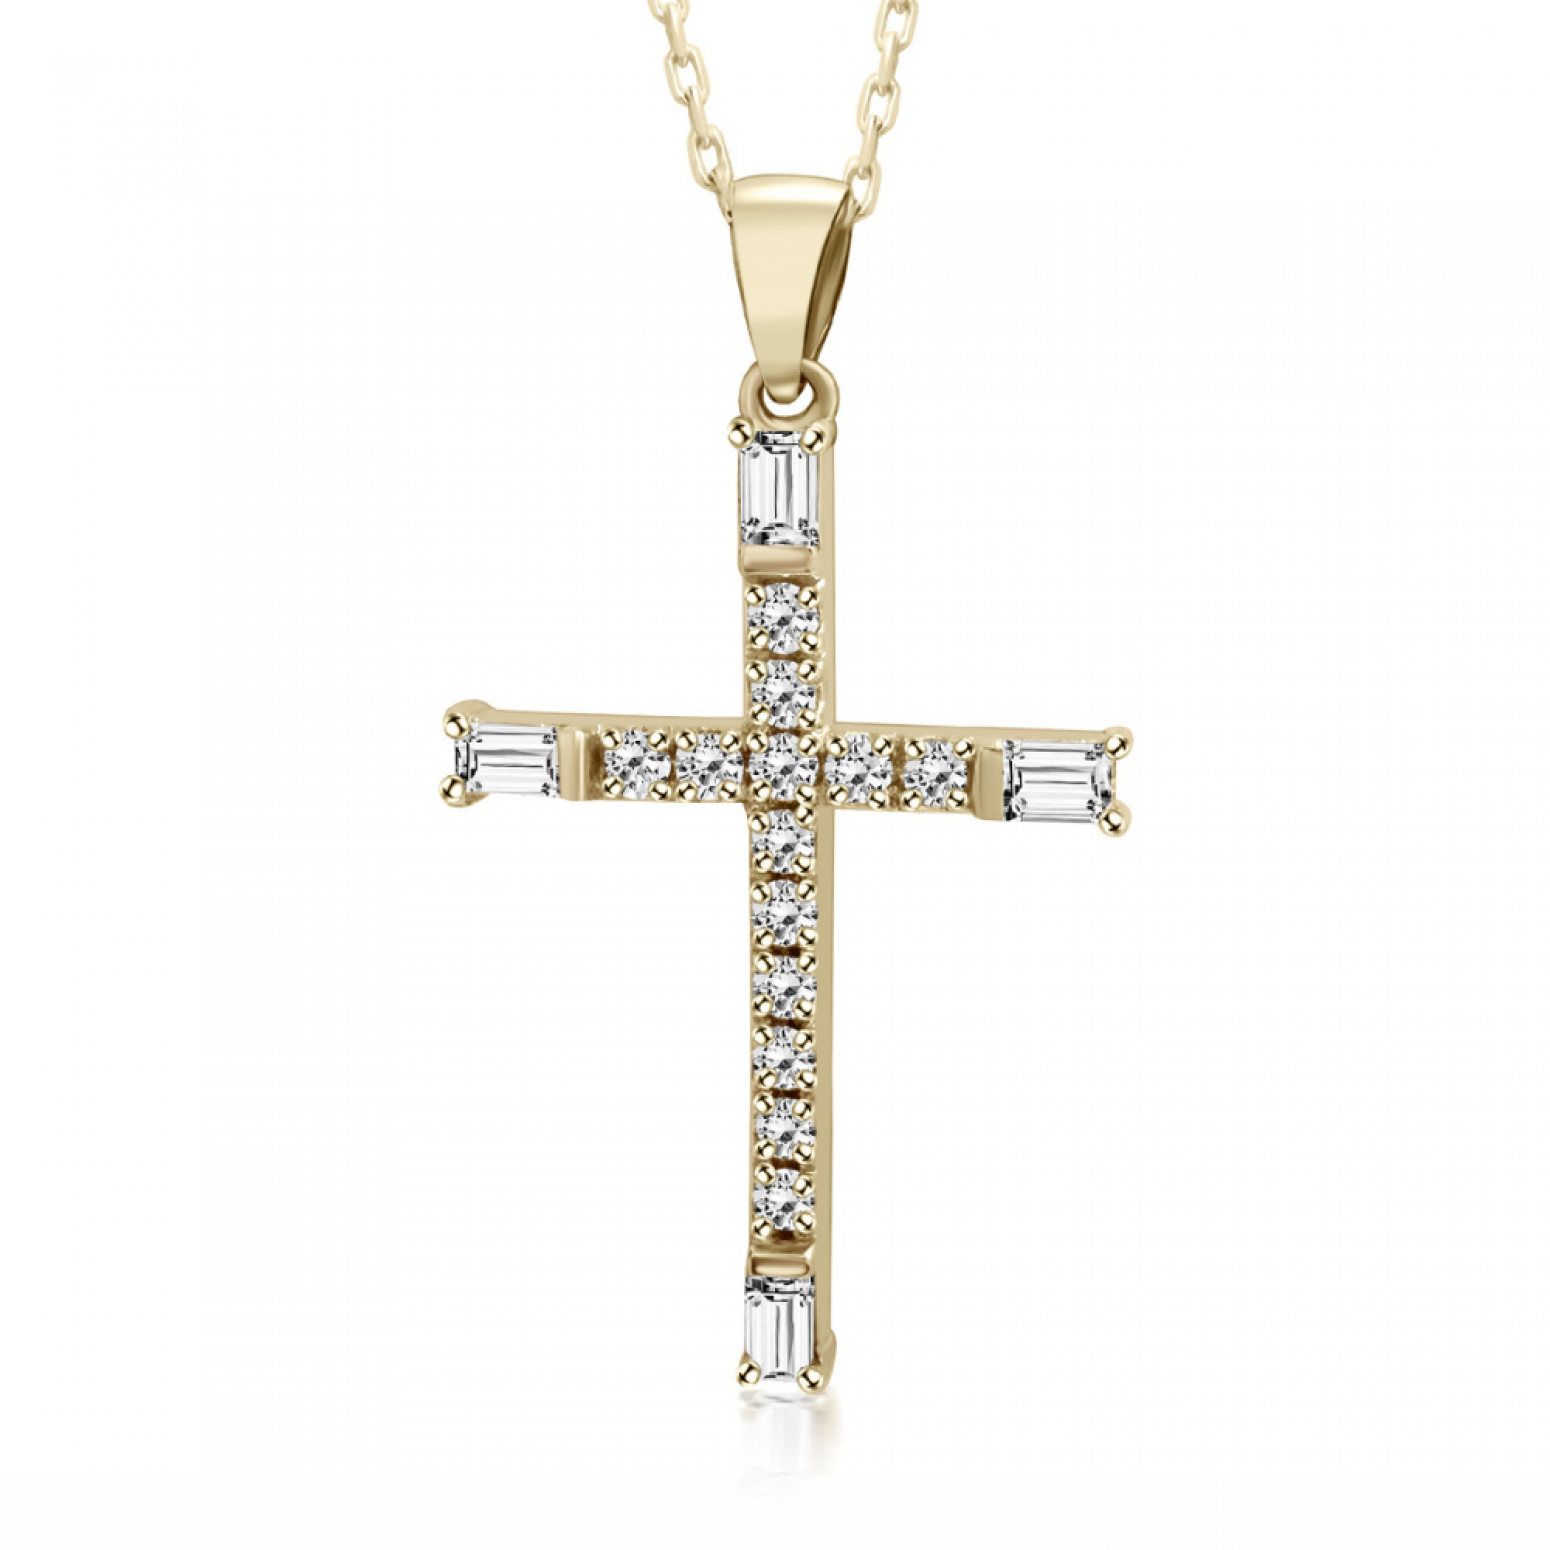 Βαπτιστικός σταυρός με αλυσίδα Κ18 χρυσό με διαμάντια 0.29ct, VS1, G ko6076 ΣΤΑΥΡΟΙ Κοσμηματα - chrilia.gr